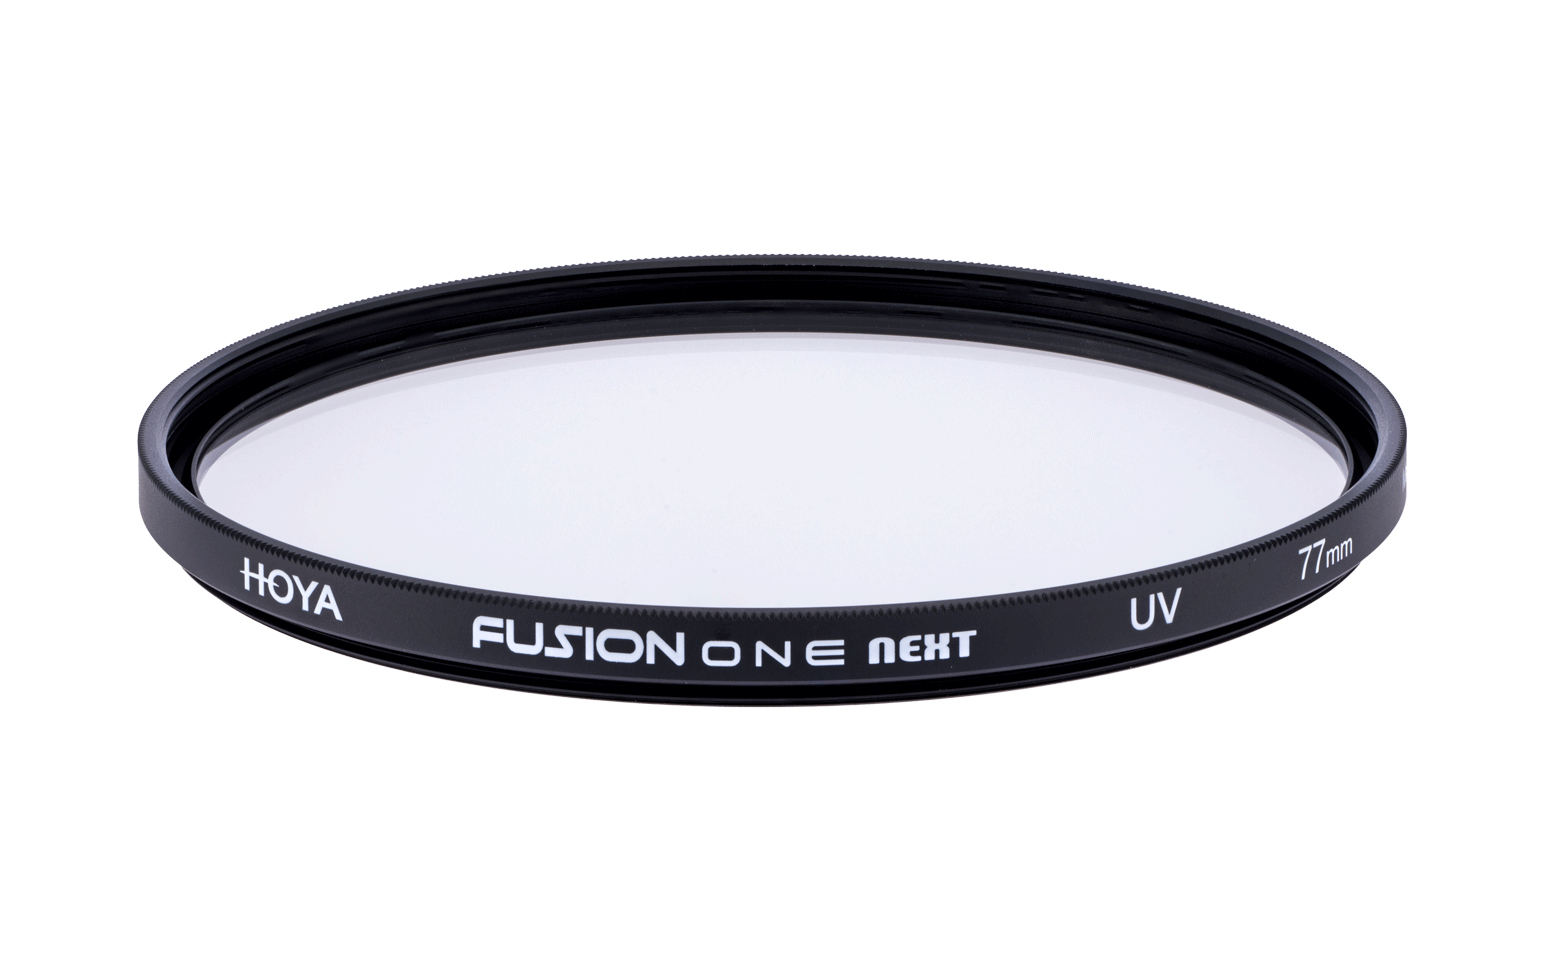 Hoya Fusion ONE Next UV